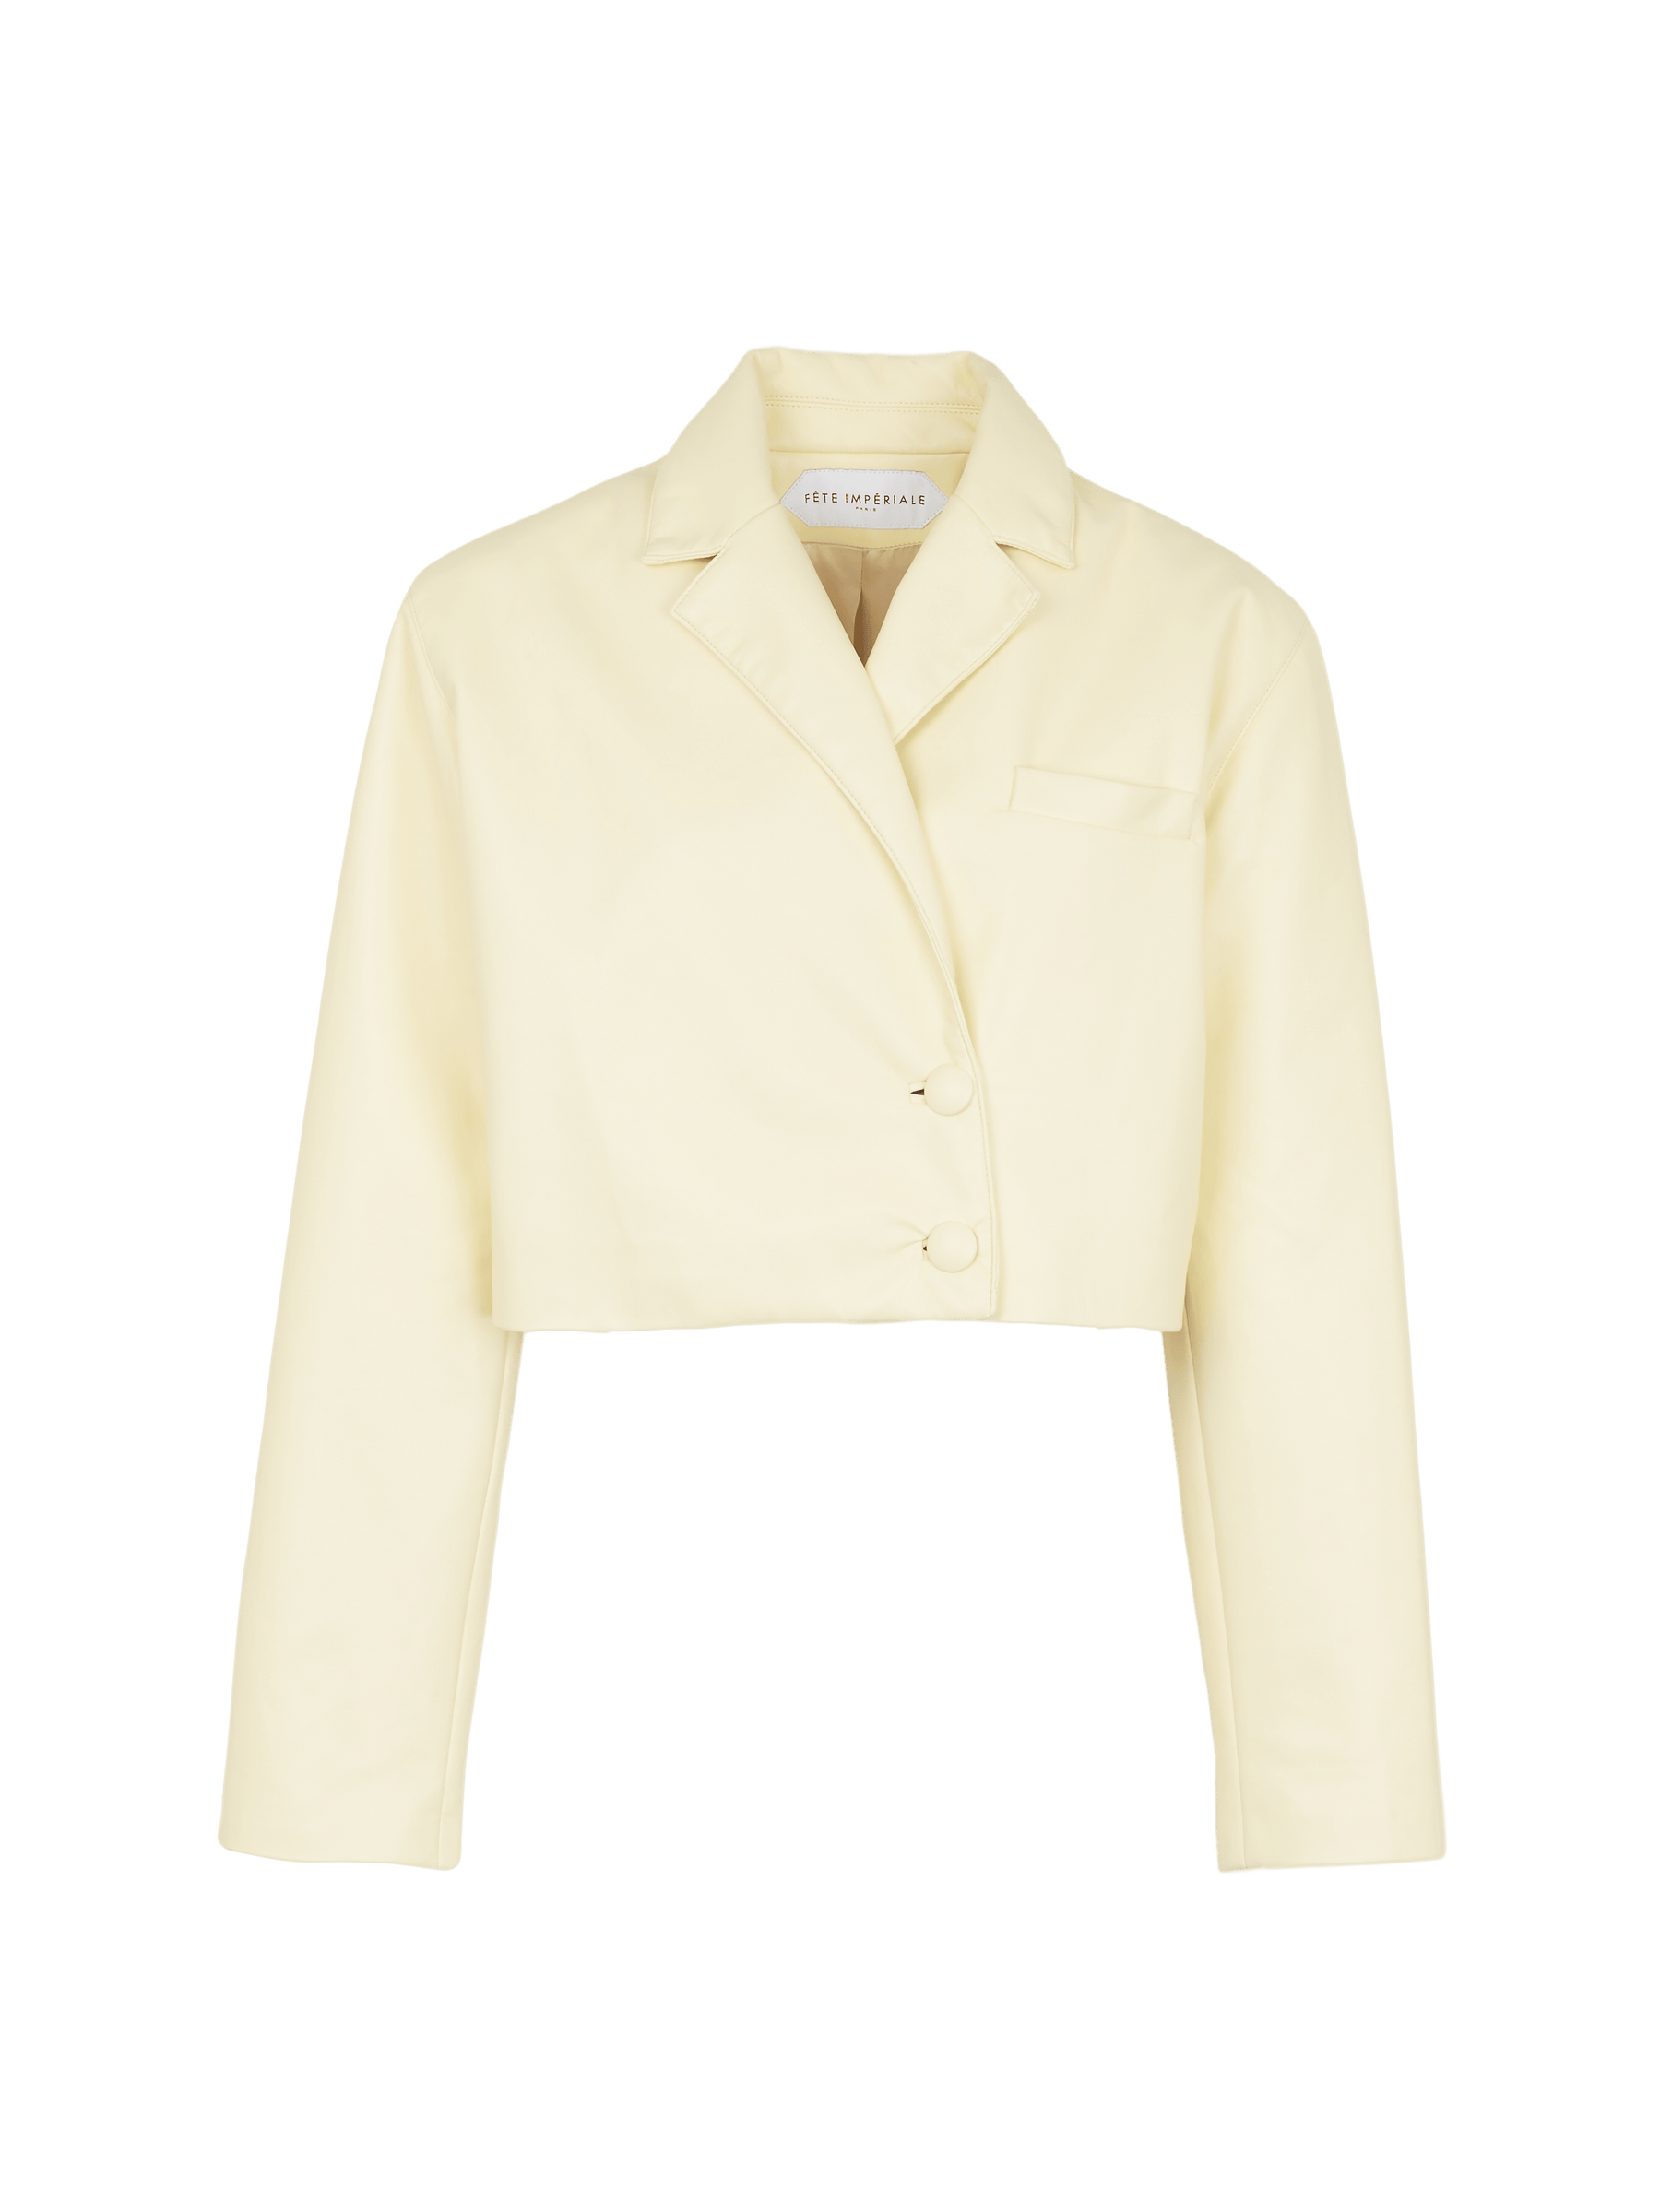 DEA - Yellow Recycled Leather Cropped Blazer Jacket Blazer Fête Impériale